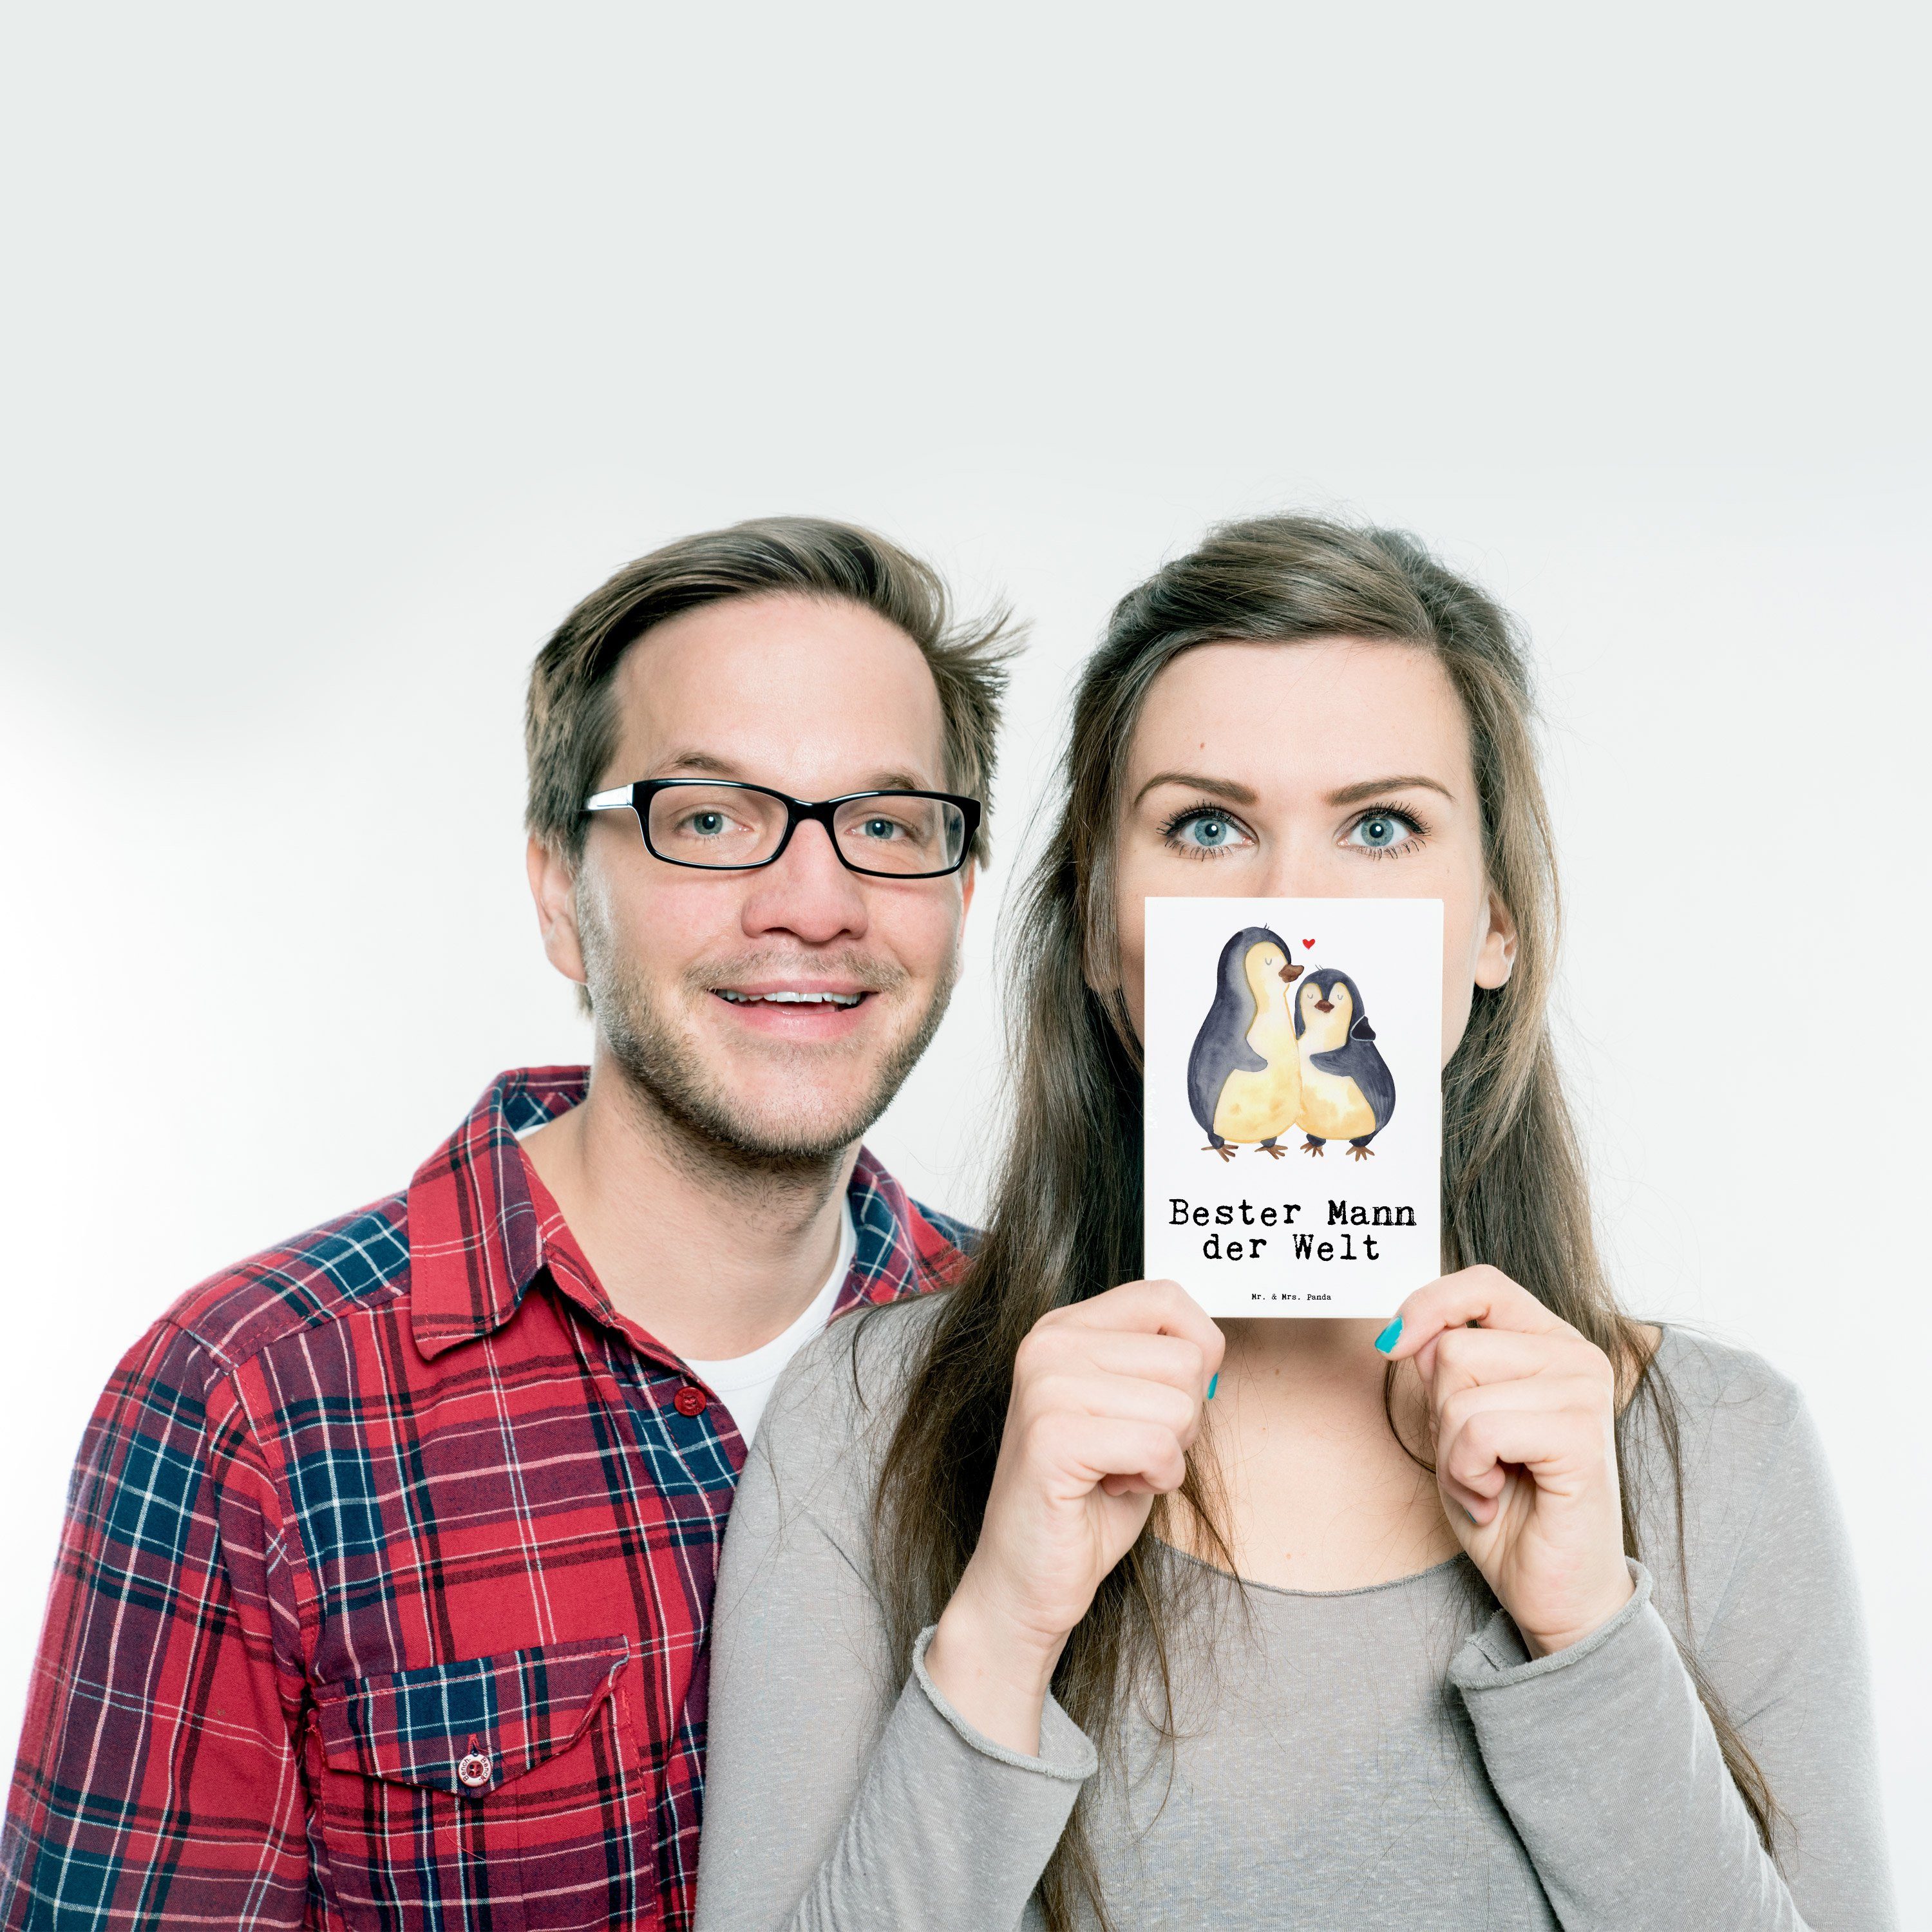 Mr. & Mrs. - der Welt Karte, Postkarte machen, Panda Geschenk, Mitbringsel, Mann Einladung, Bester Lebensgefährte, Weiß Geschenkidee, Freude Bräutigam - Pinguin Geschenkkarte